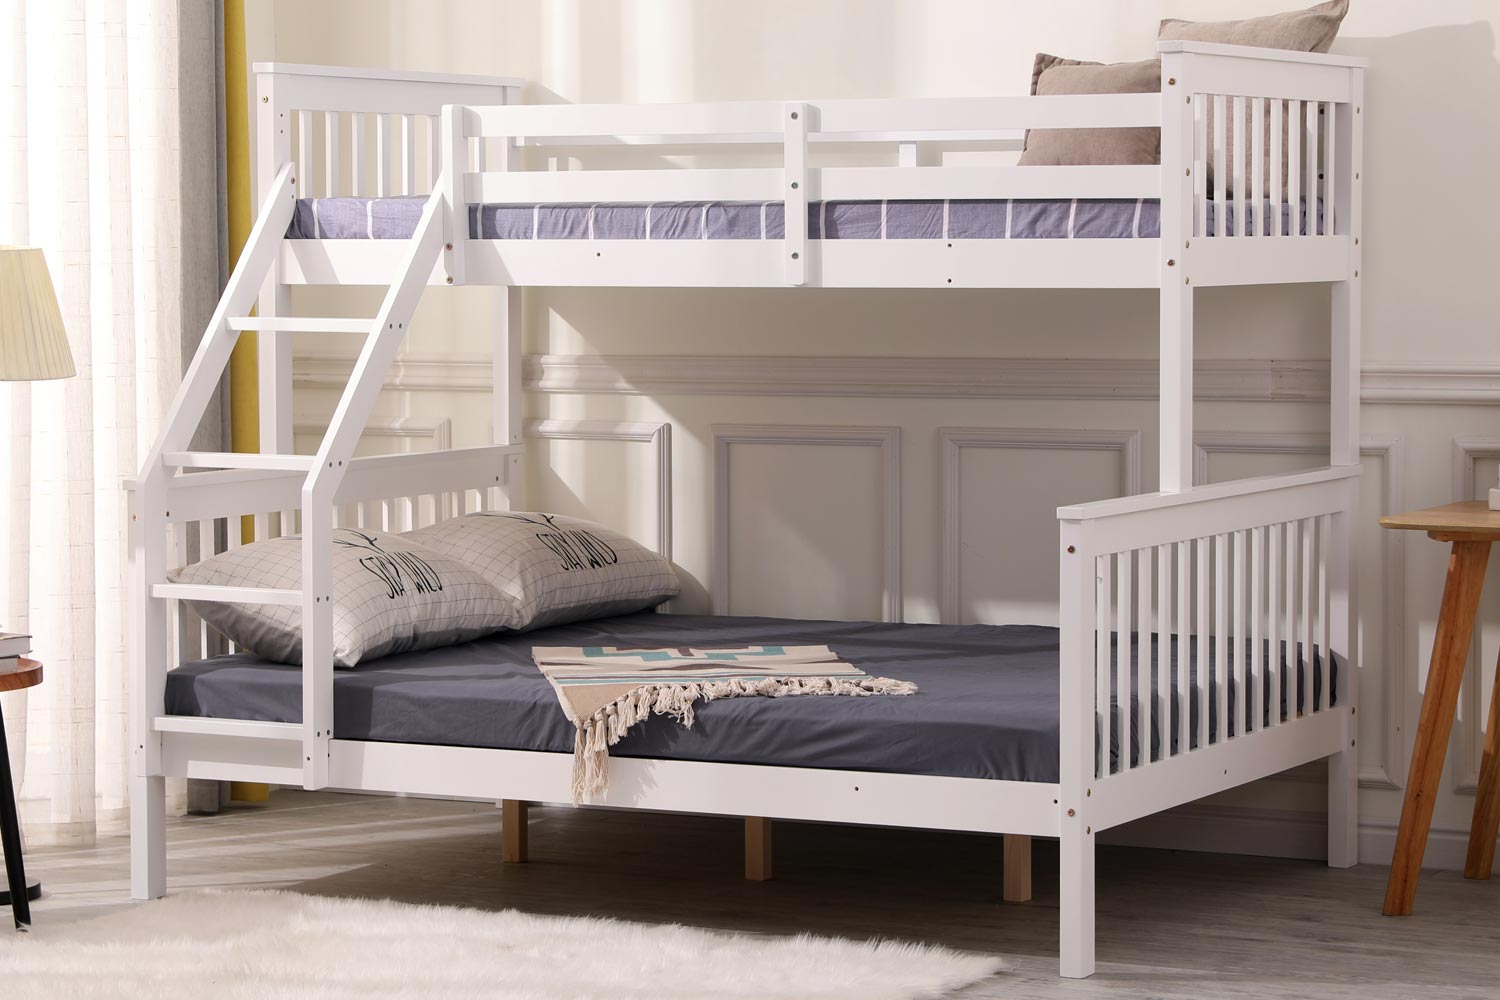 Indie Kids Bunk Bed Triple Sleeper White